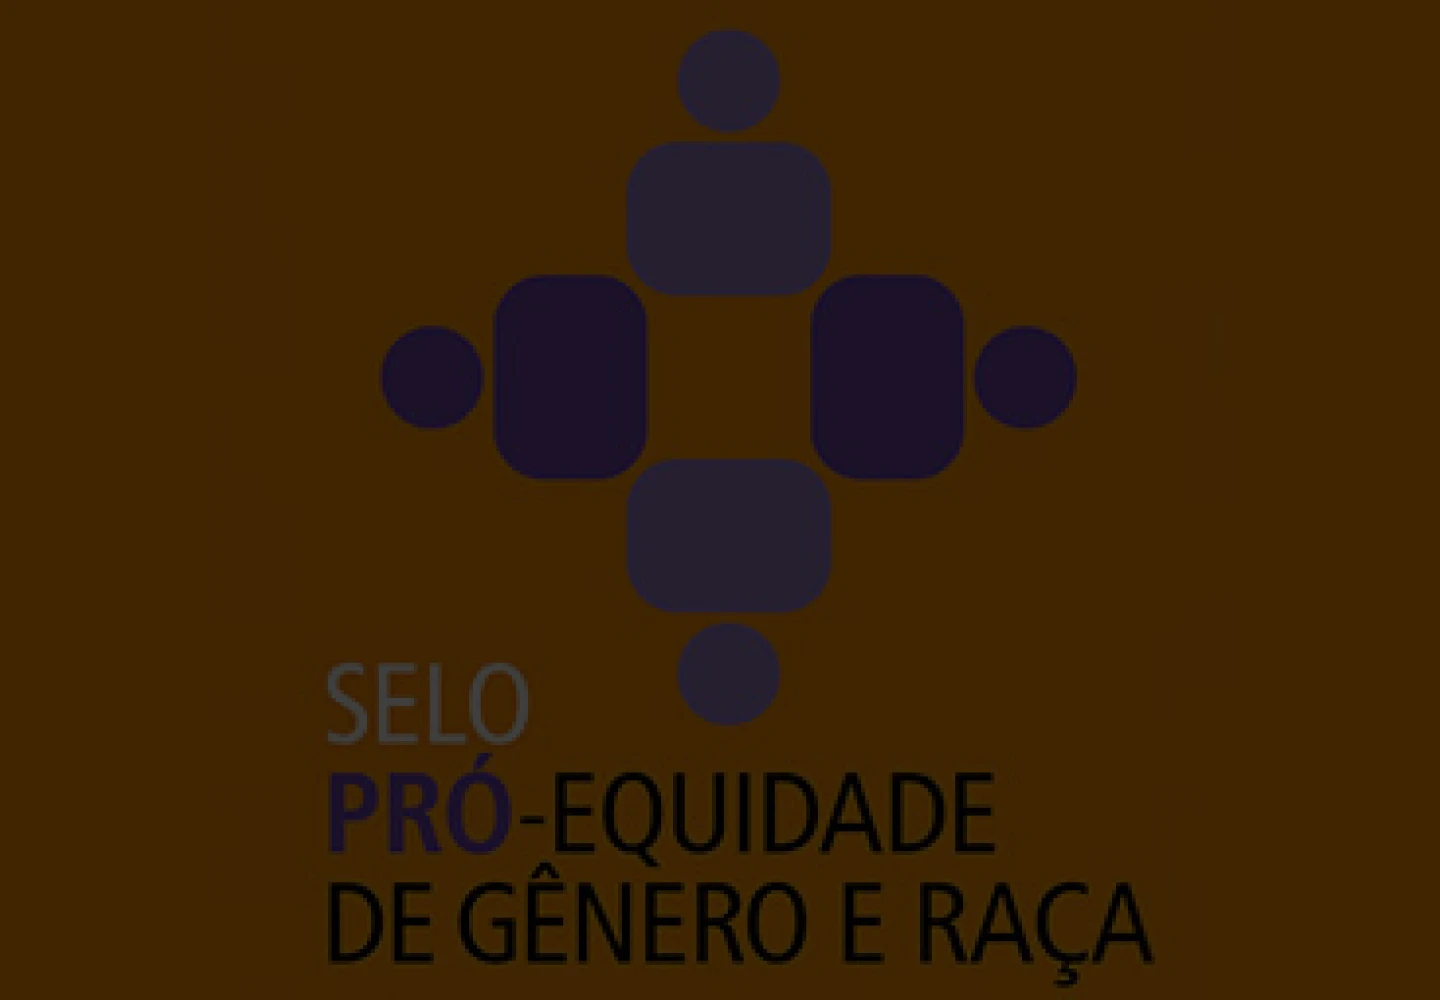 Logotipo do Selo Pró-Equidade de Gênero e Raça.